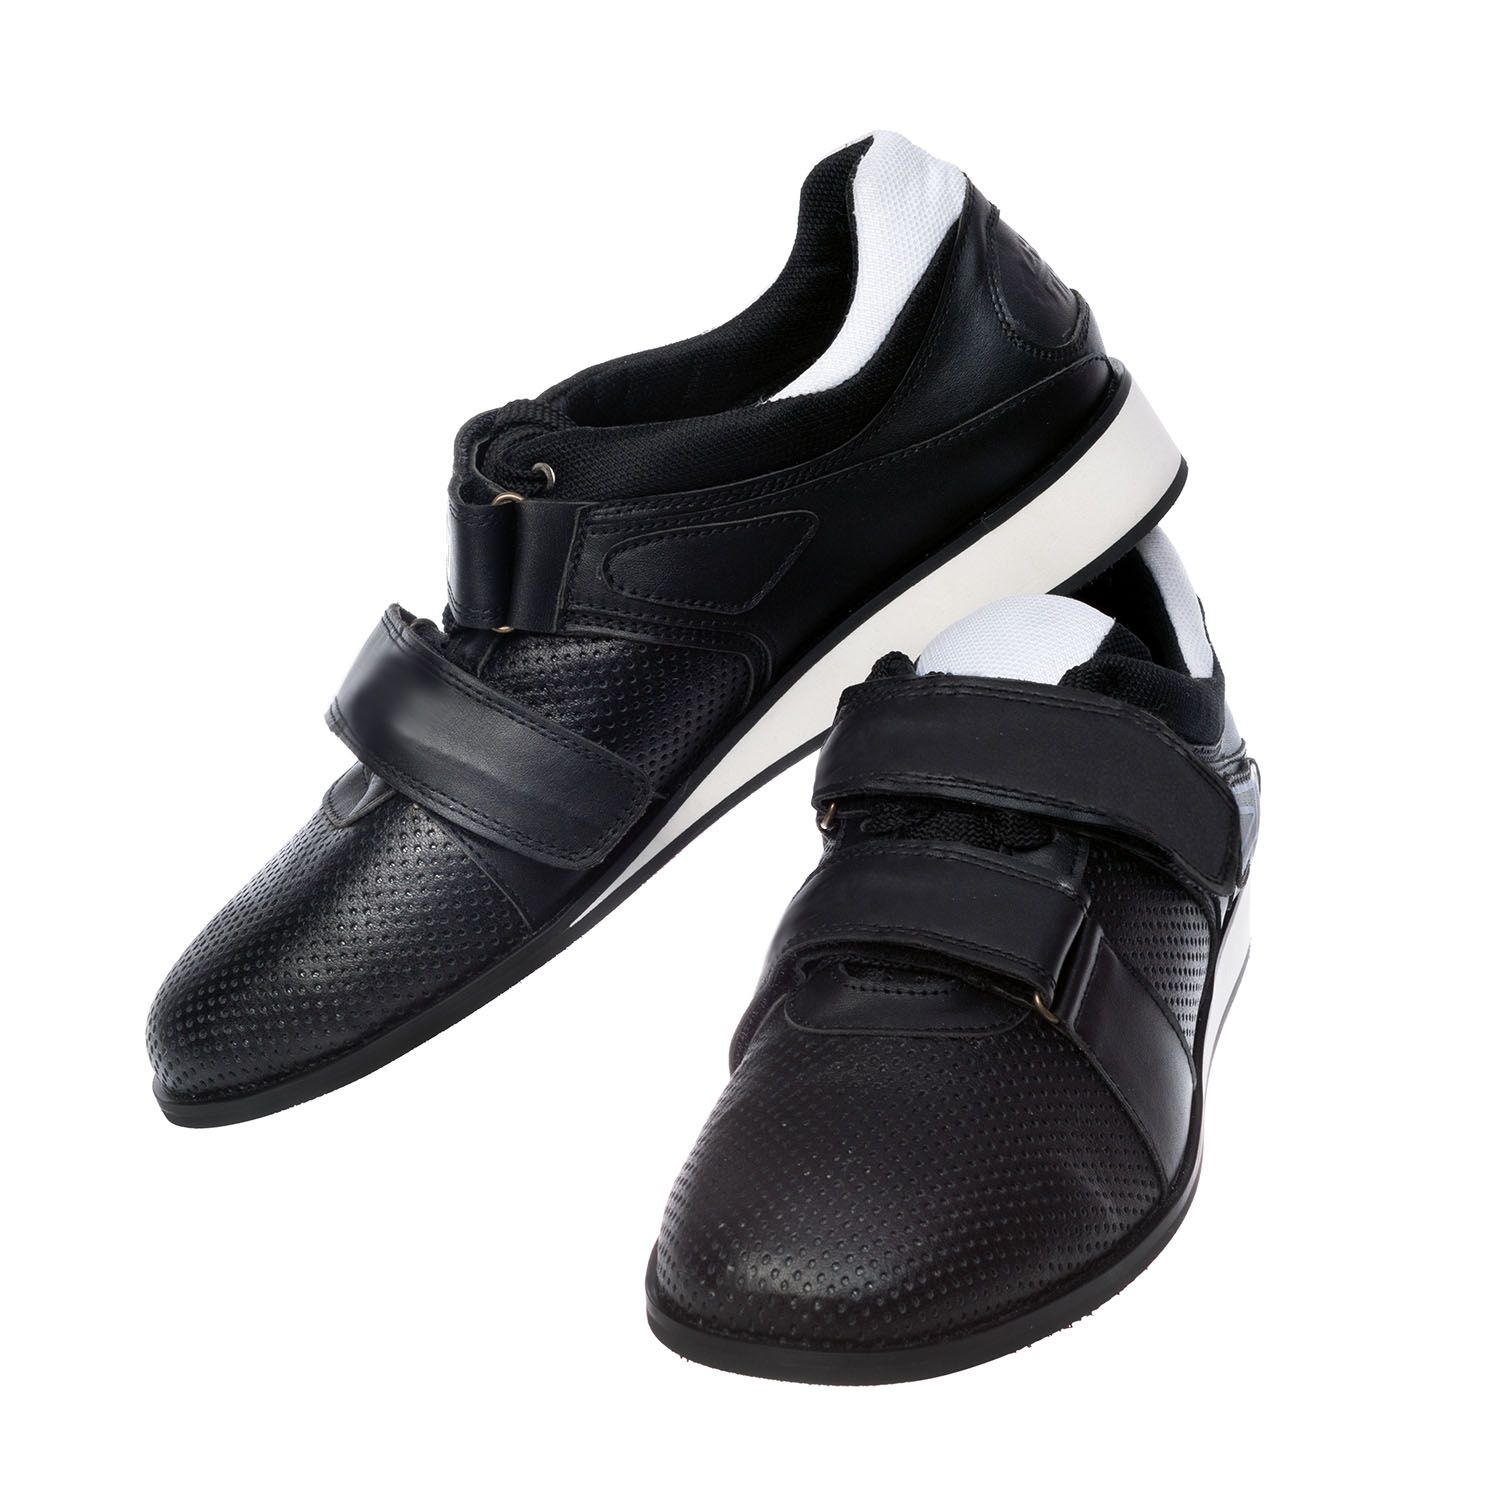 Weightlifting shoes Zhabotinsky Classic, black, size 35 (UKR)